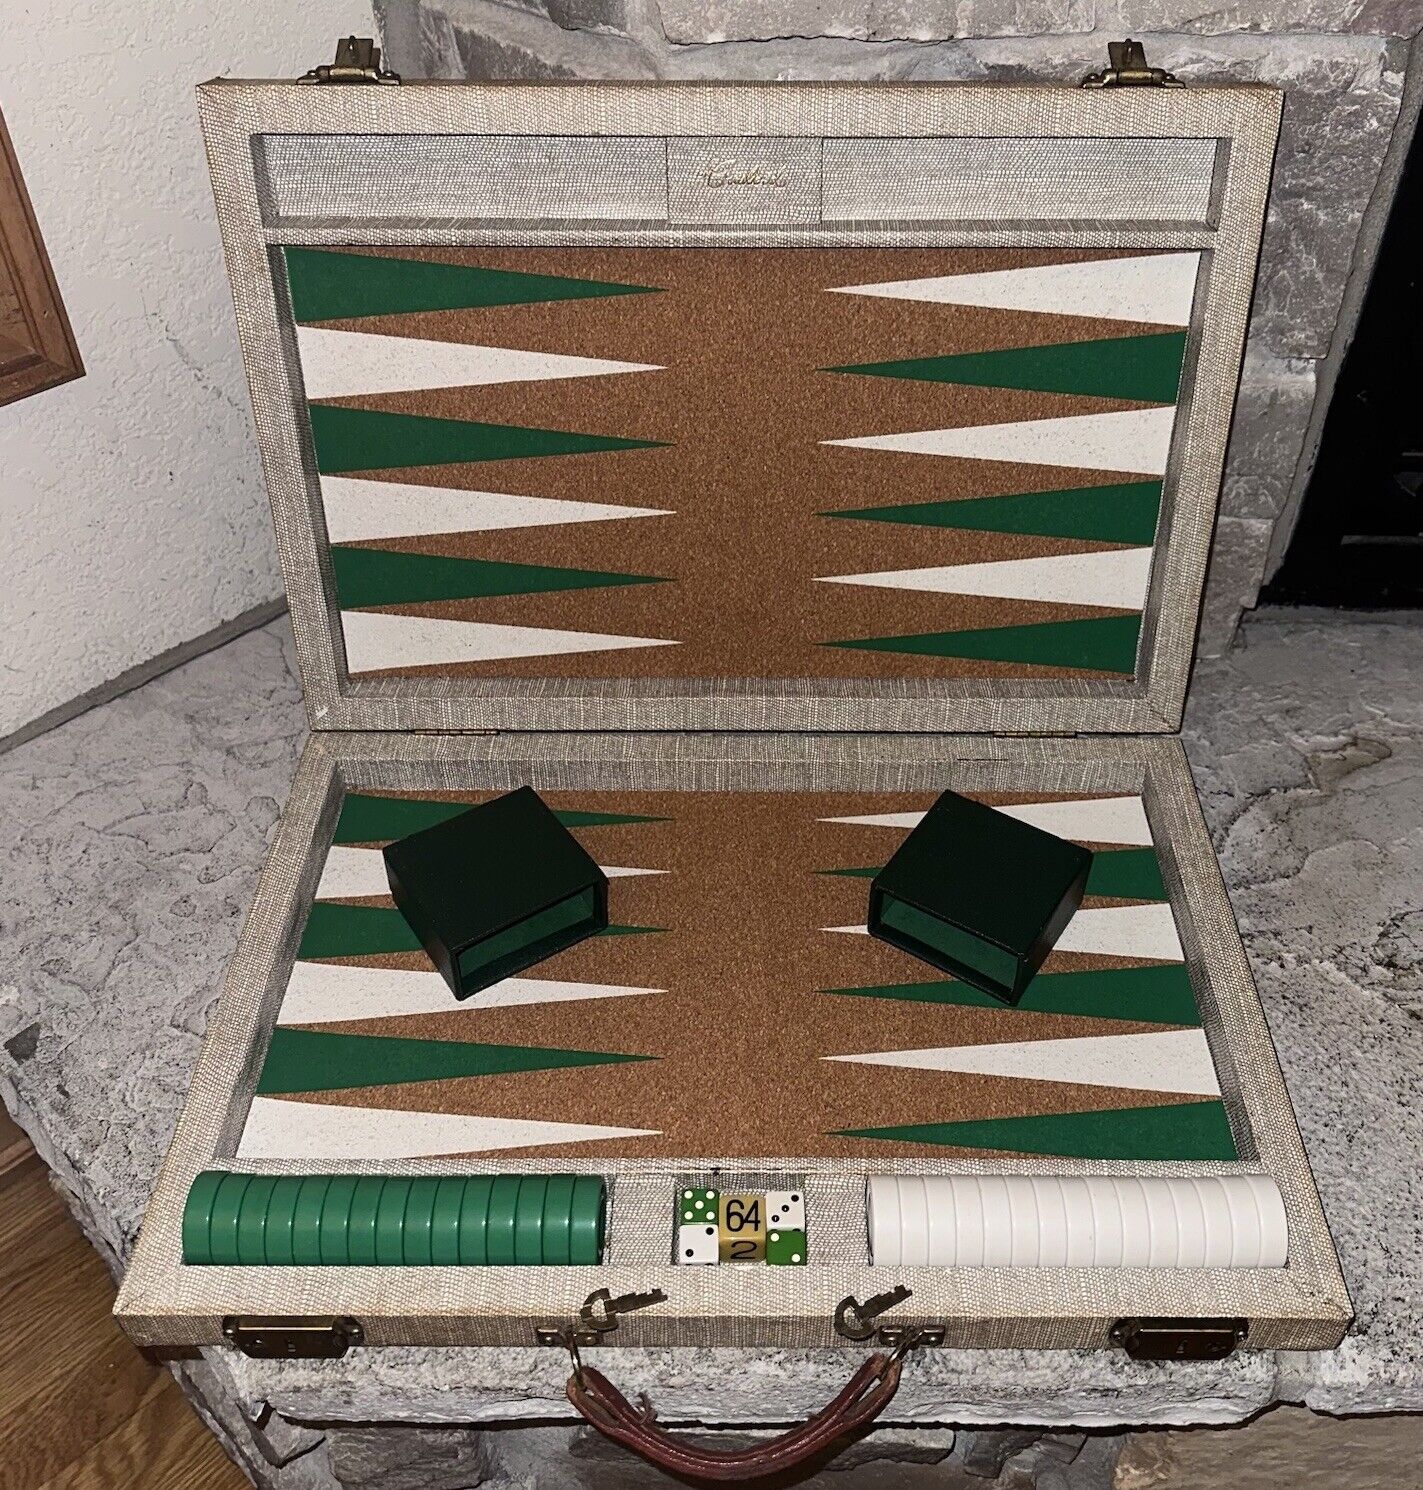 Vintage Crisloid 26x19” Backgammon Set Cork Board Green Bakelite Chips +2 Keys